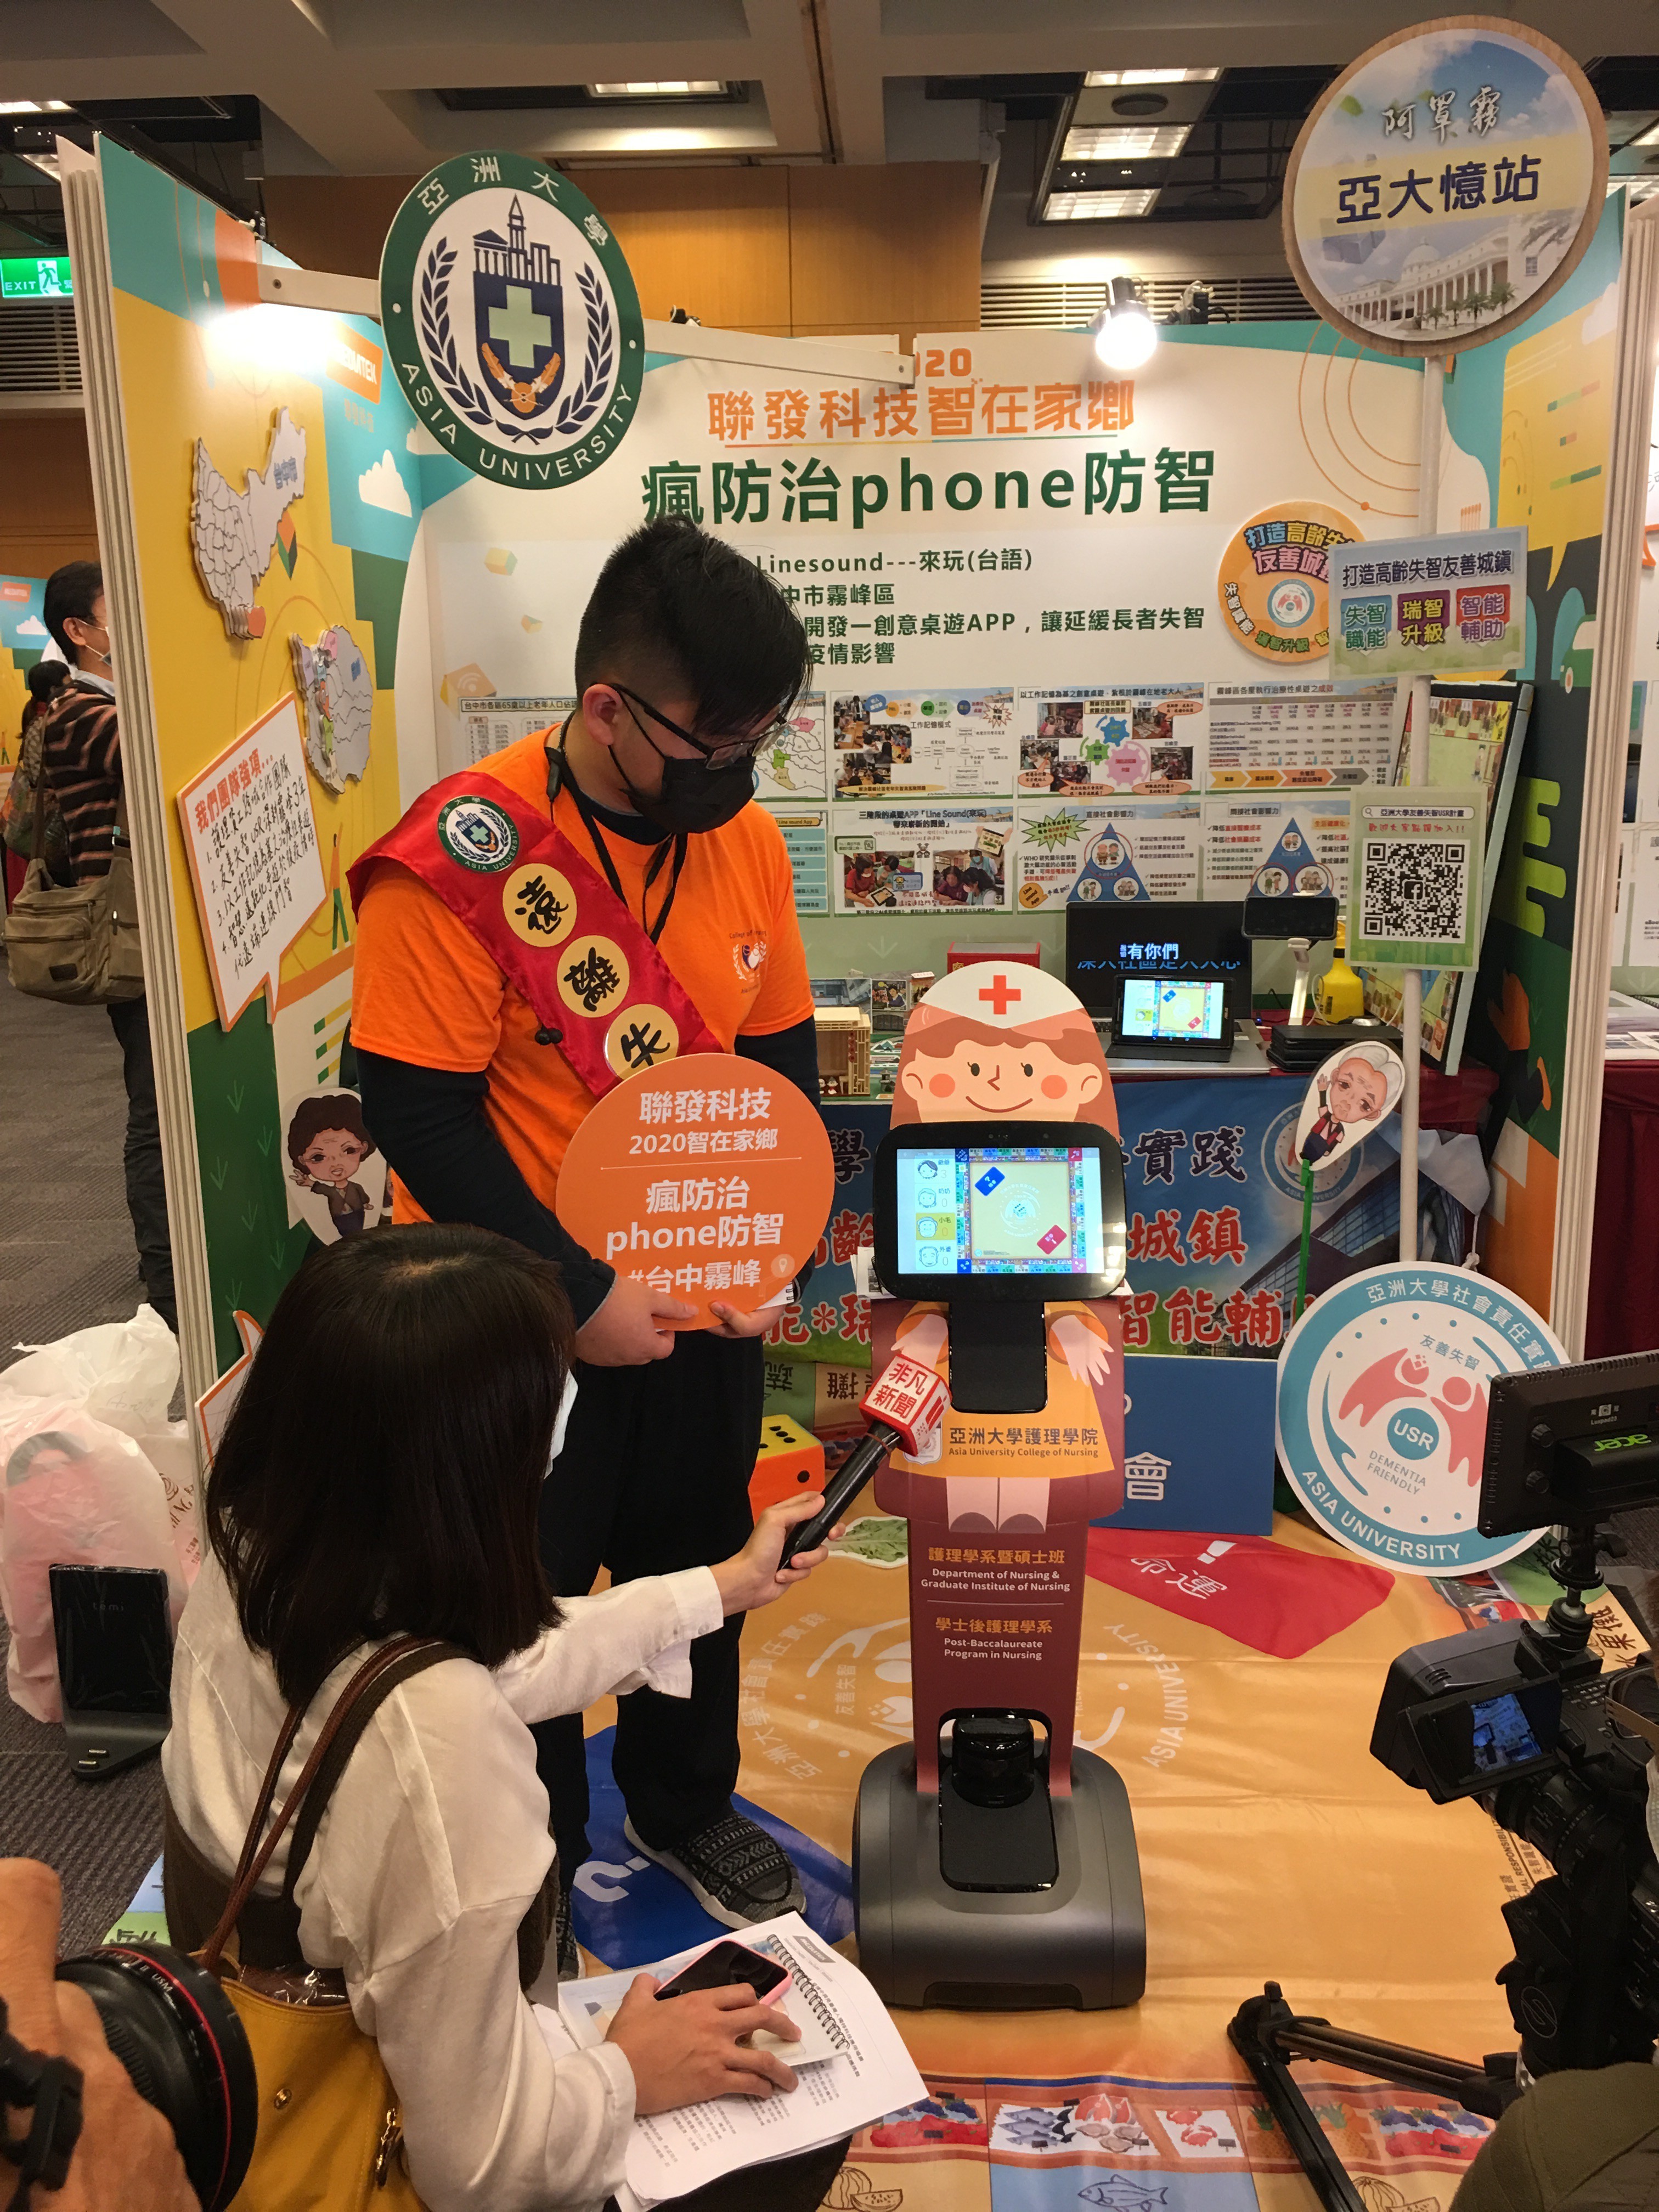 亞大護理學院TEMI機器人展示Line sound App，可協助預防老人失智，吸引媒體採訪。